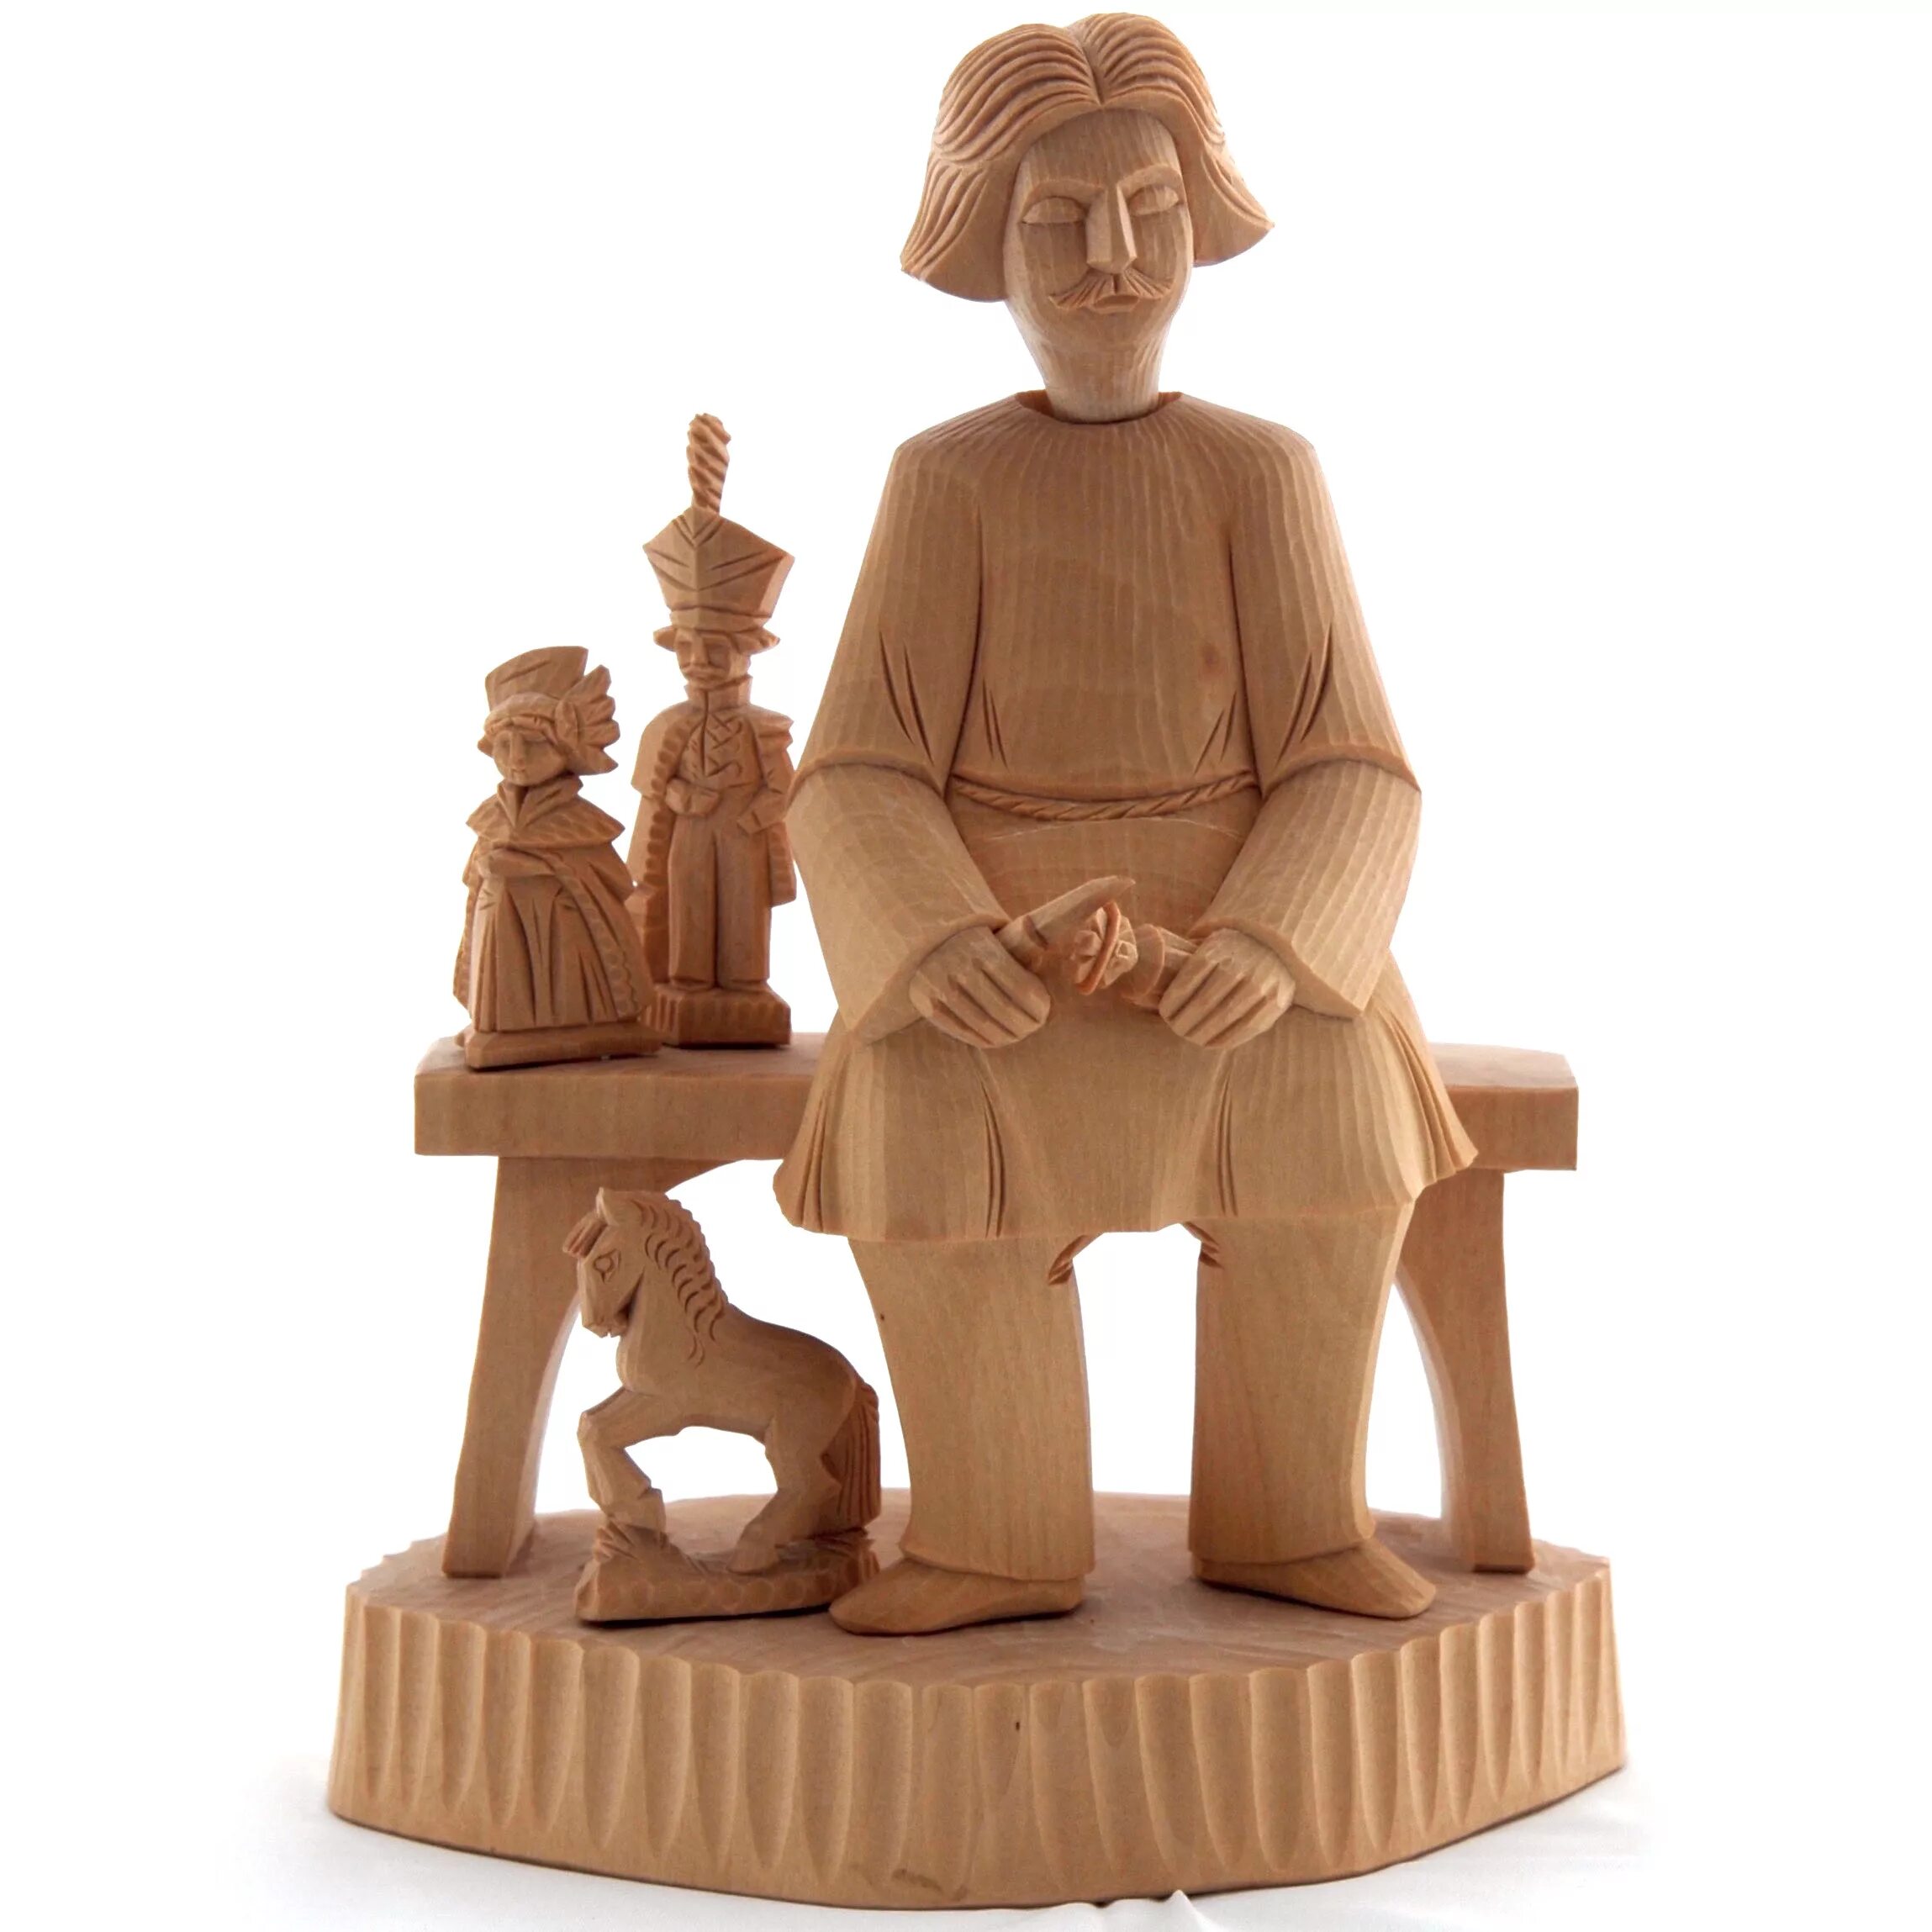 Богородский промысел. Богородская резьба (Богородская игрушка). Богородская скульптурная резьба.